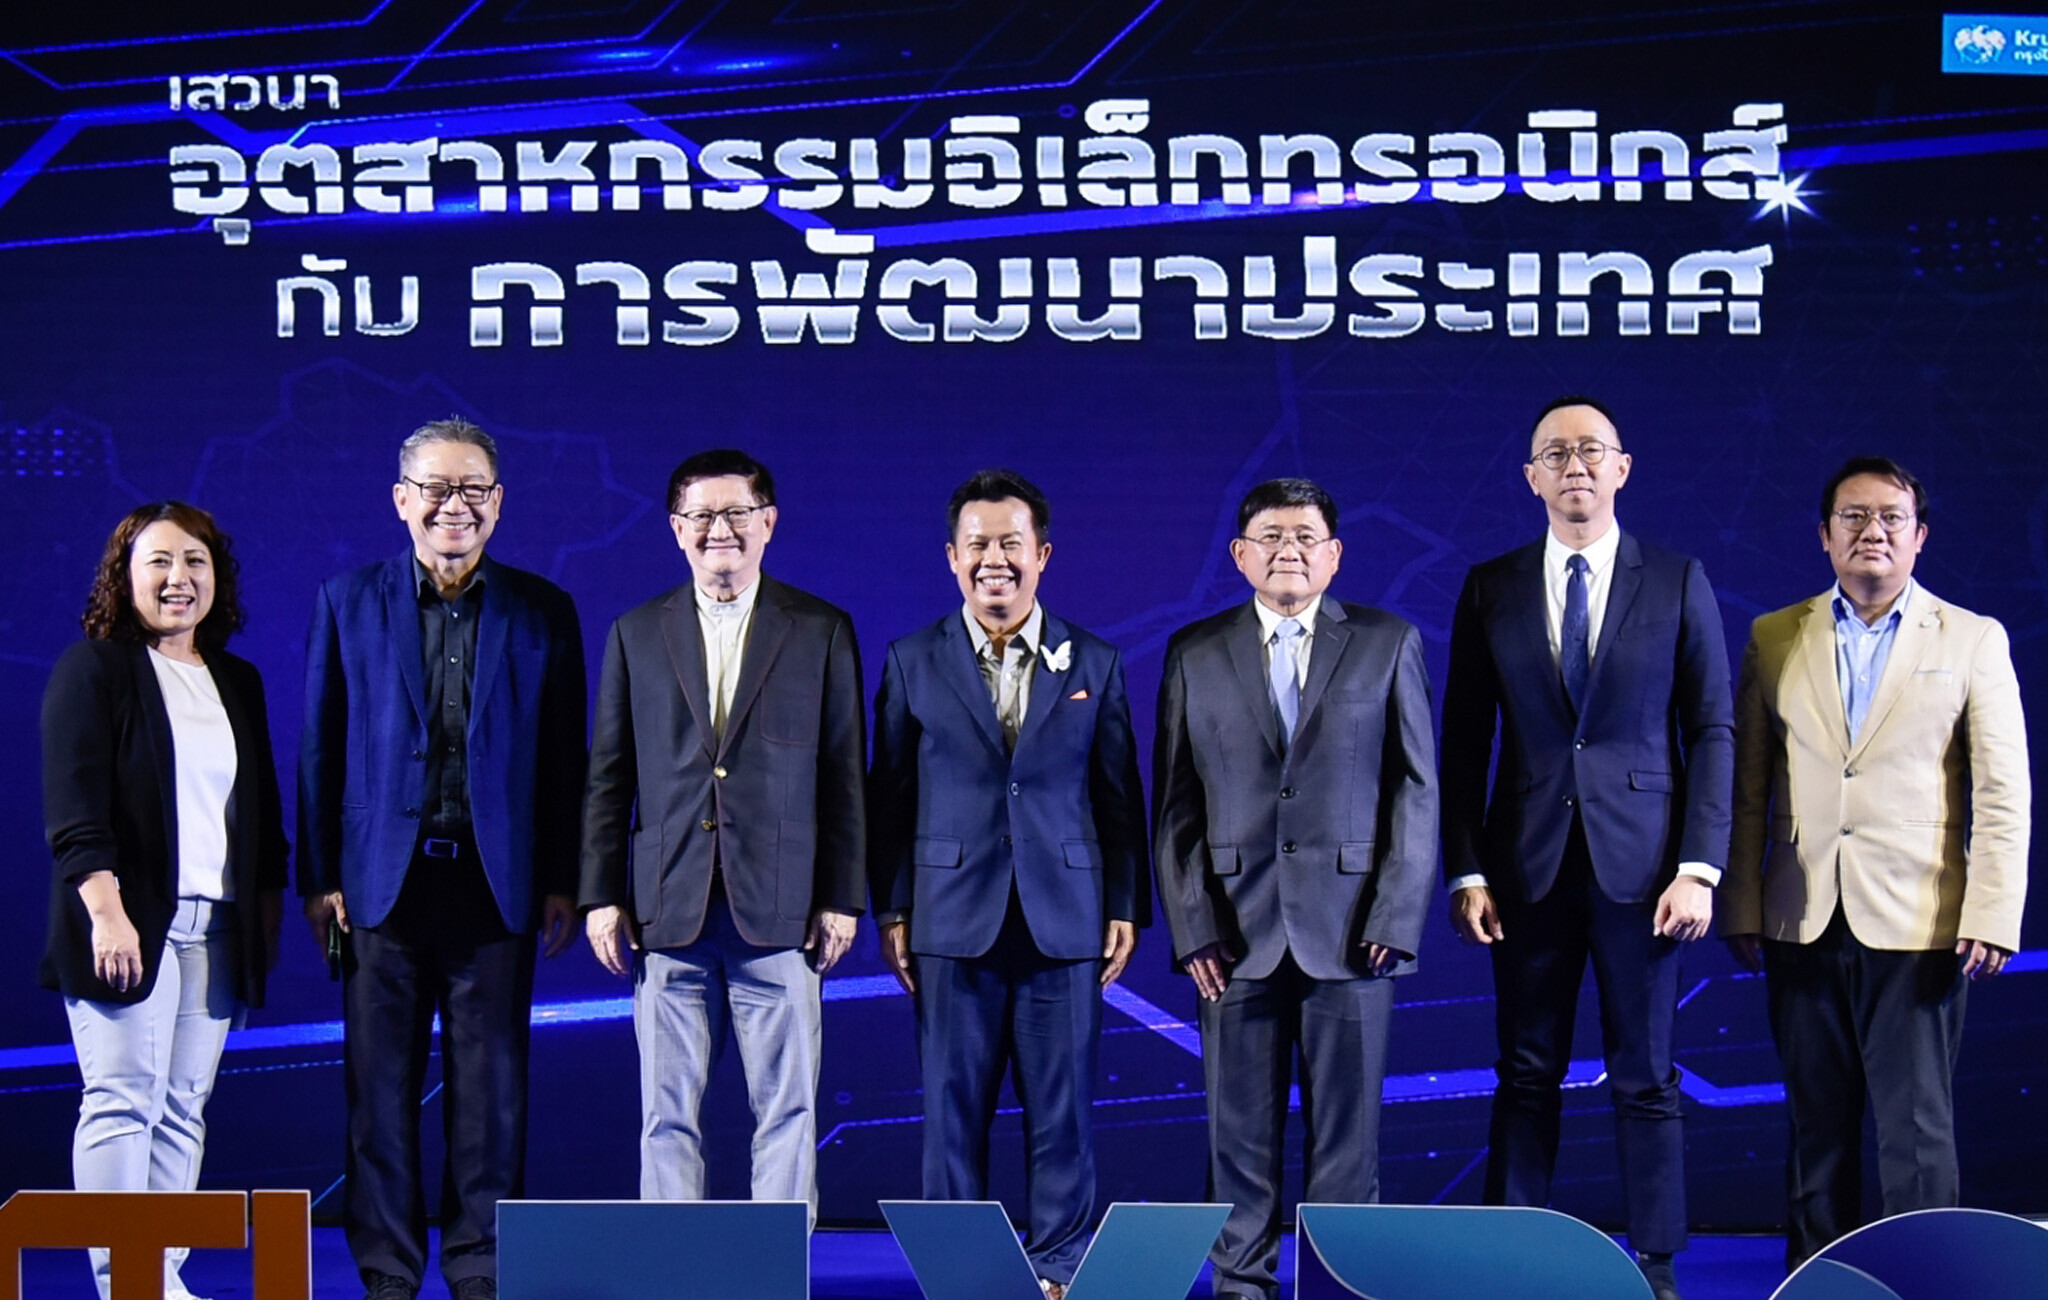 6 ผู้นำชูธงยกระดับ "อุตสาหกรรมอิเล็กทรอนิกส์กับการพัฒนาประเทศไทย" ต้องขับเคลื่อนให้เป็นอุตสาหกรรมต้นน้ำ